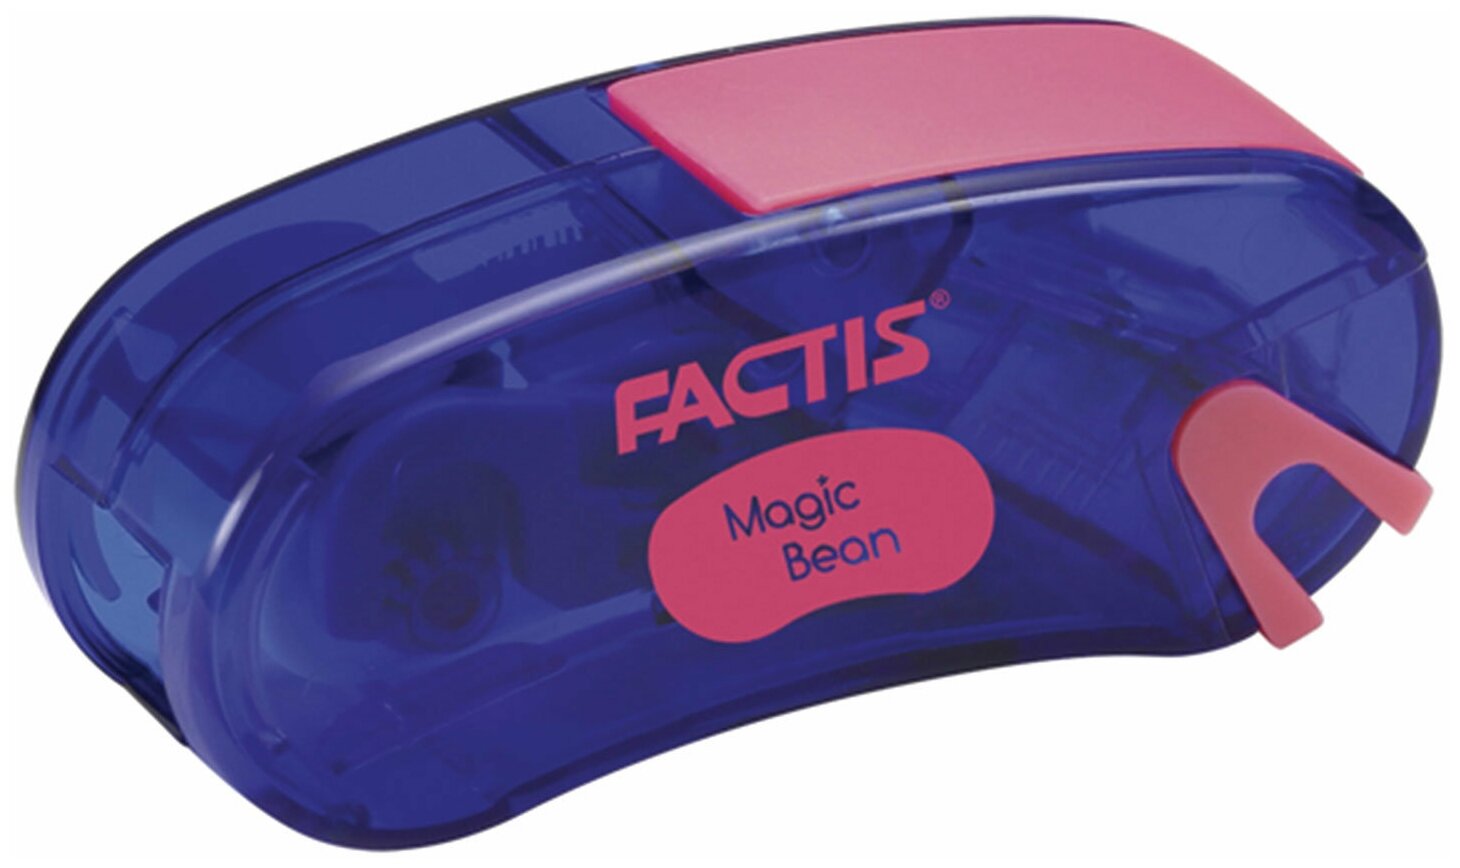 Точилка FACTIS Magic Bean (Испания), с контейнером и стирательной резинкой, 65x30x20 мм, ассорти, F4715215